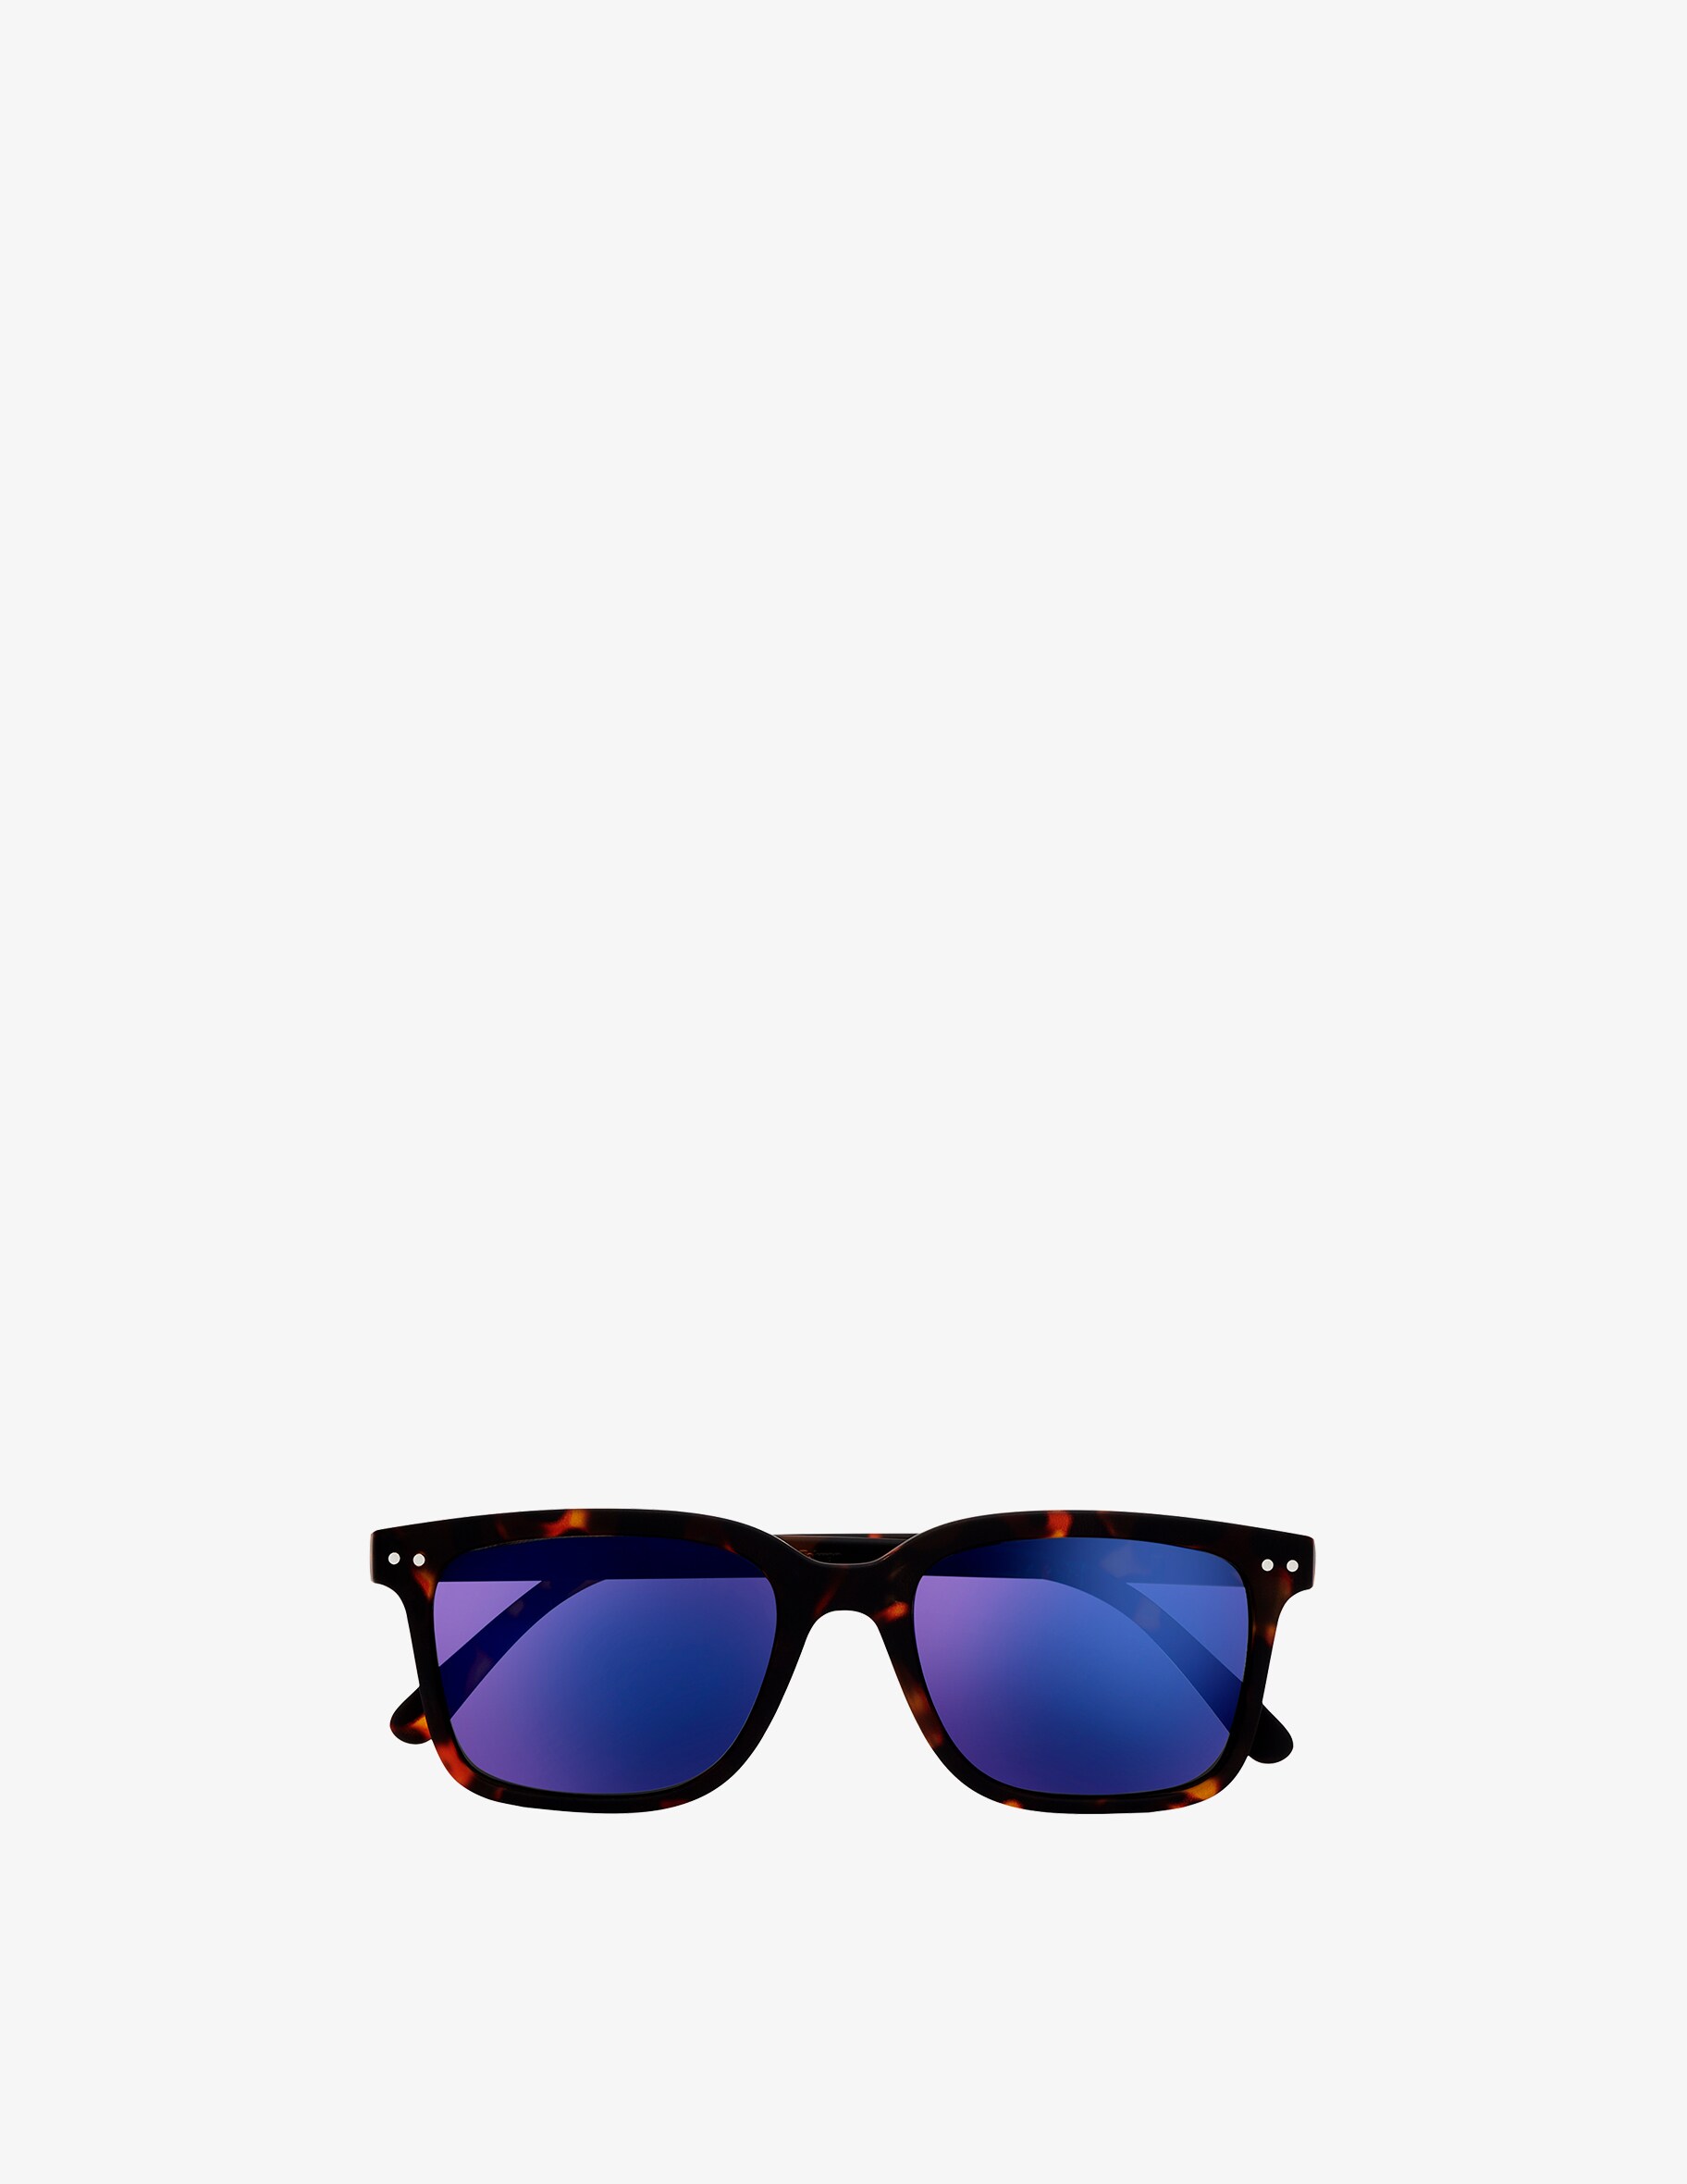 цена Солнцезащитные очки Модель #L Черепаховые Зеркальные Линзы Izipizi